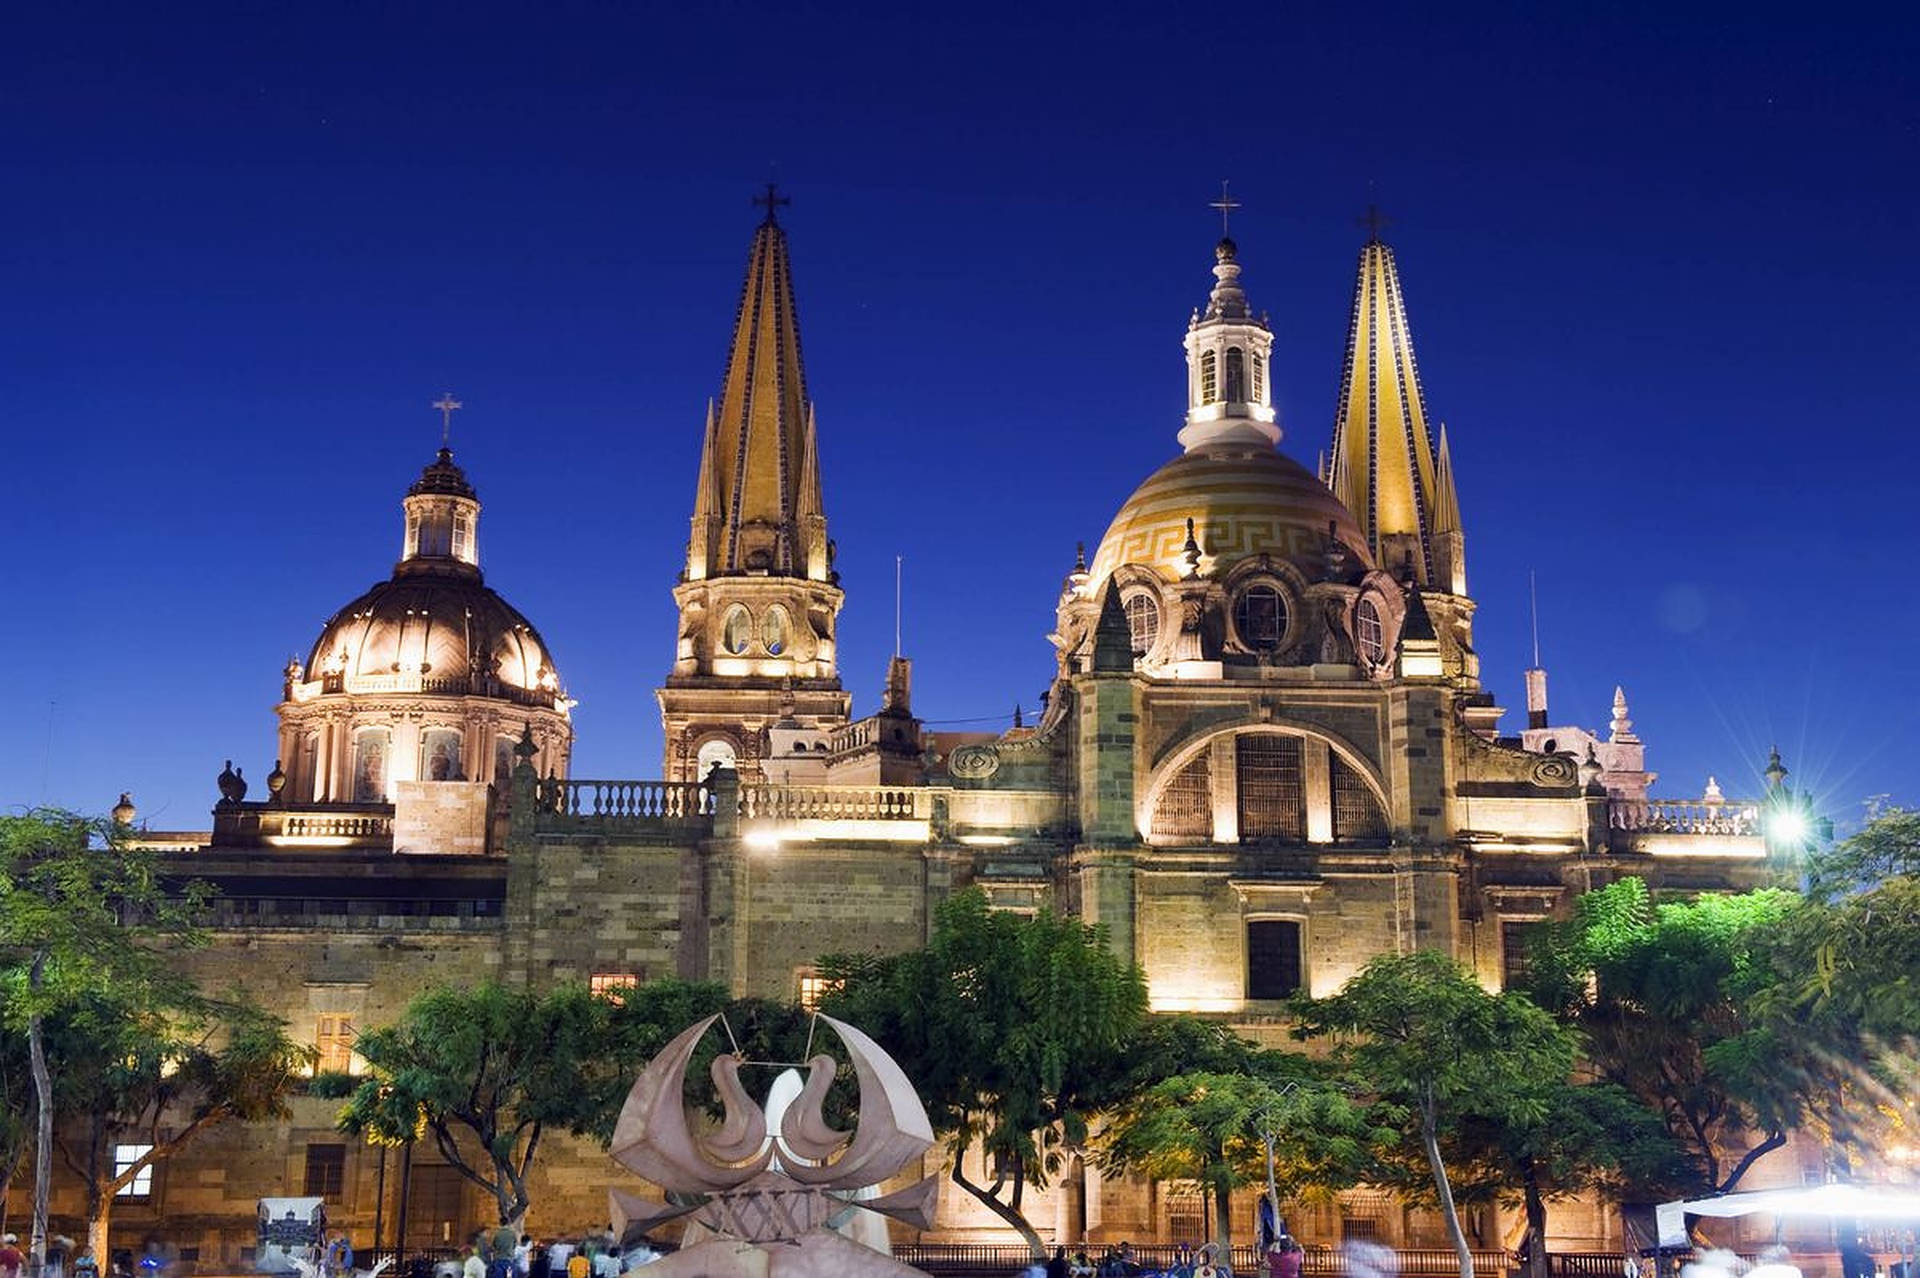 Guadalajara Cathedral At Night